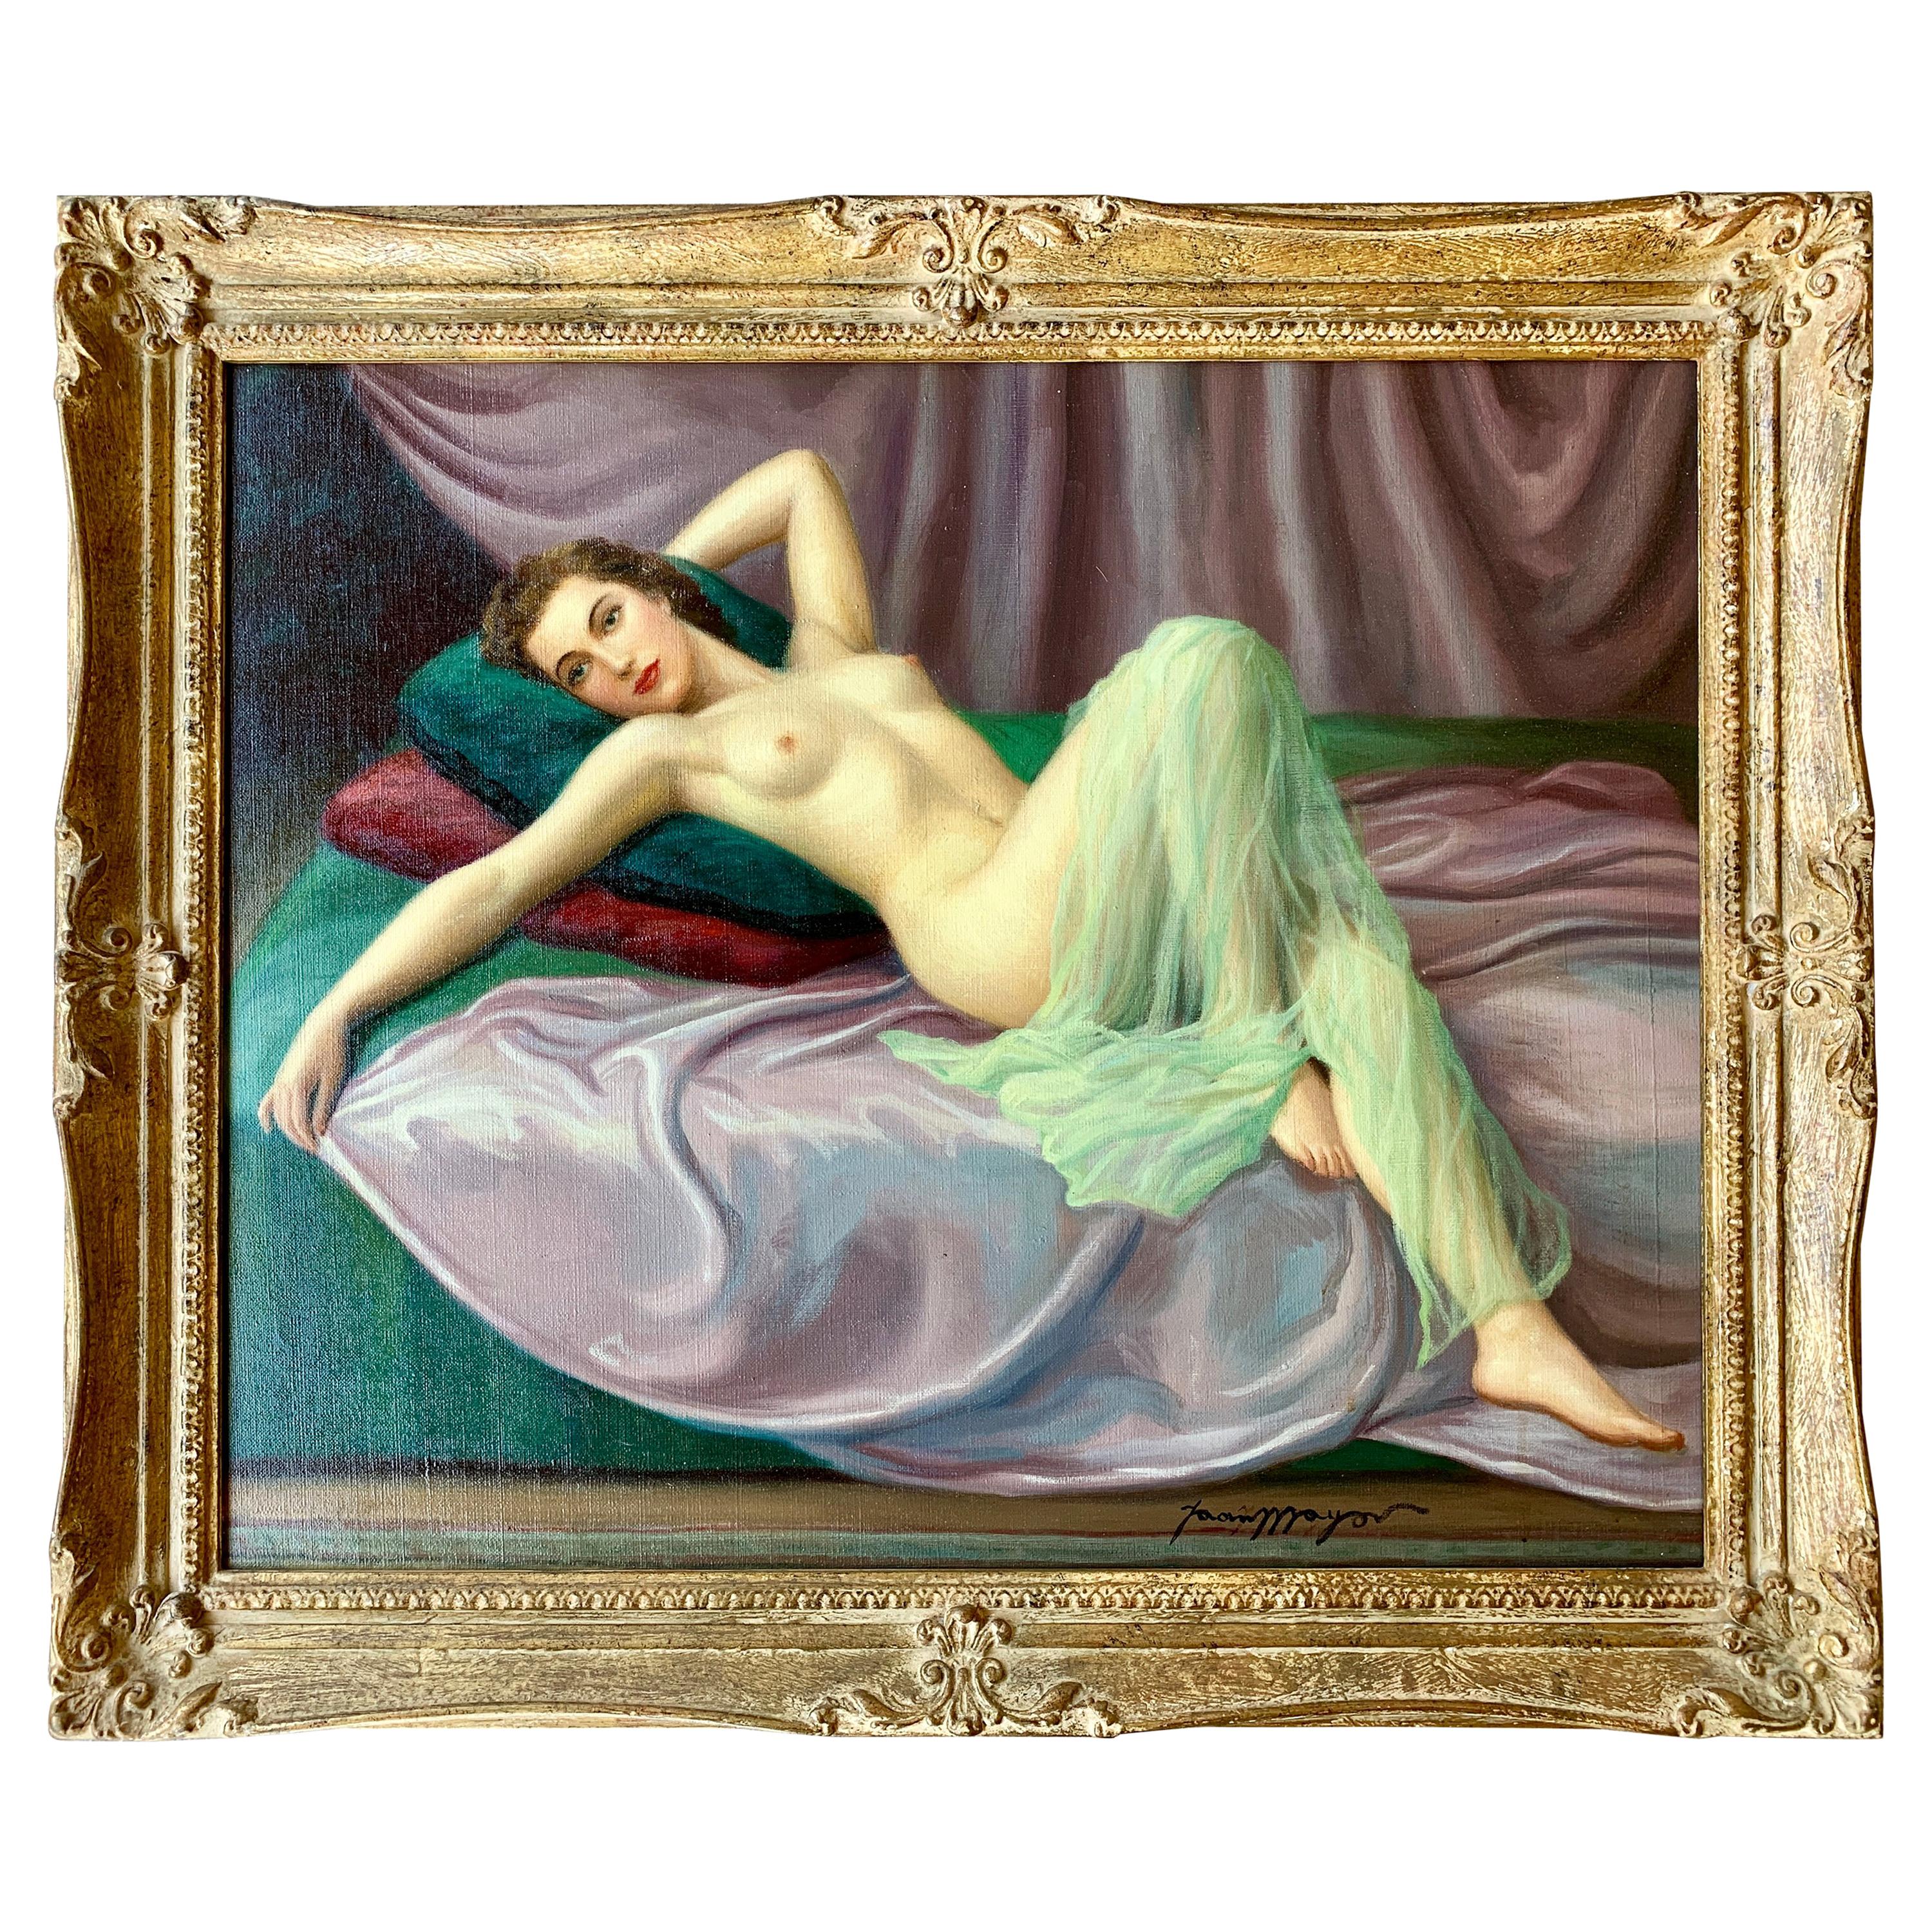 Sensuales Original französisches Gemälde, Liegesessel, Nackt, Pin-Up Girl, von Joan Mayor, 1940er Jahre